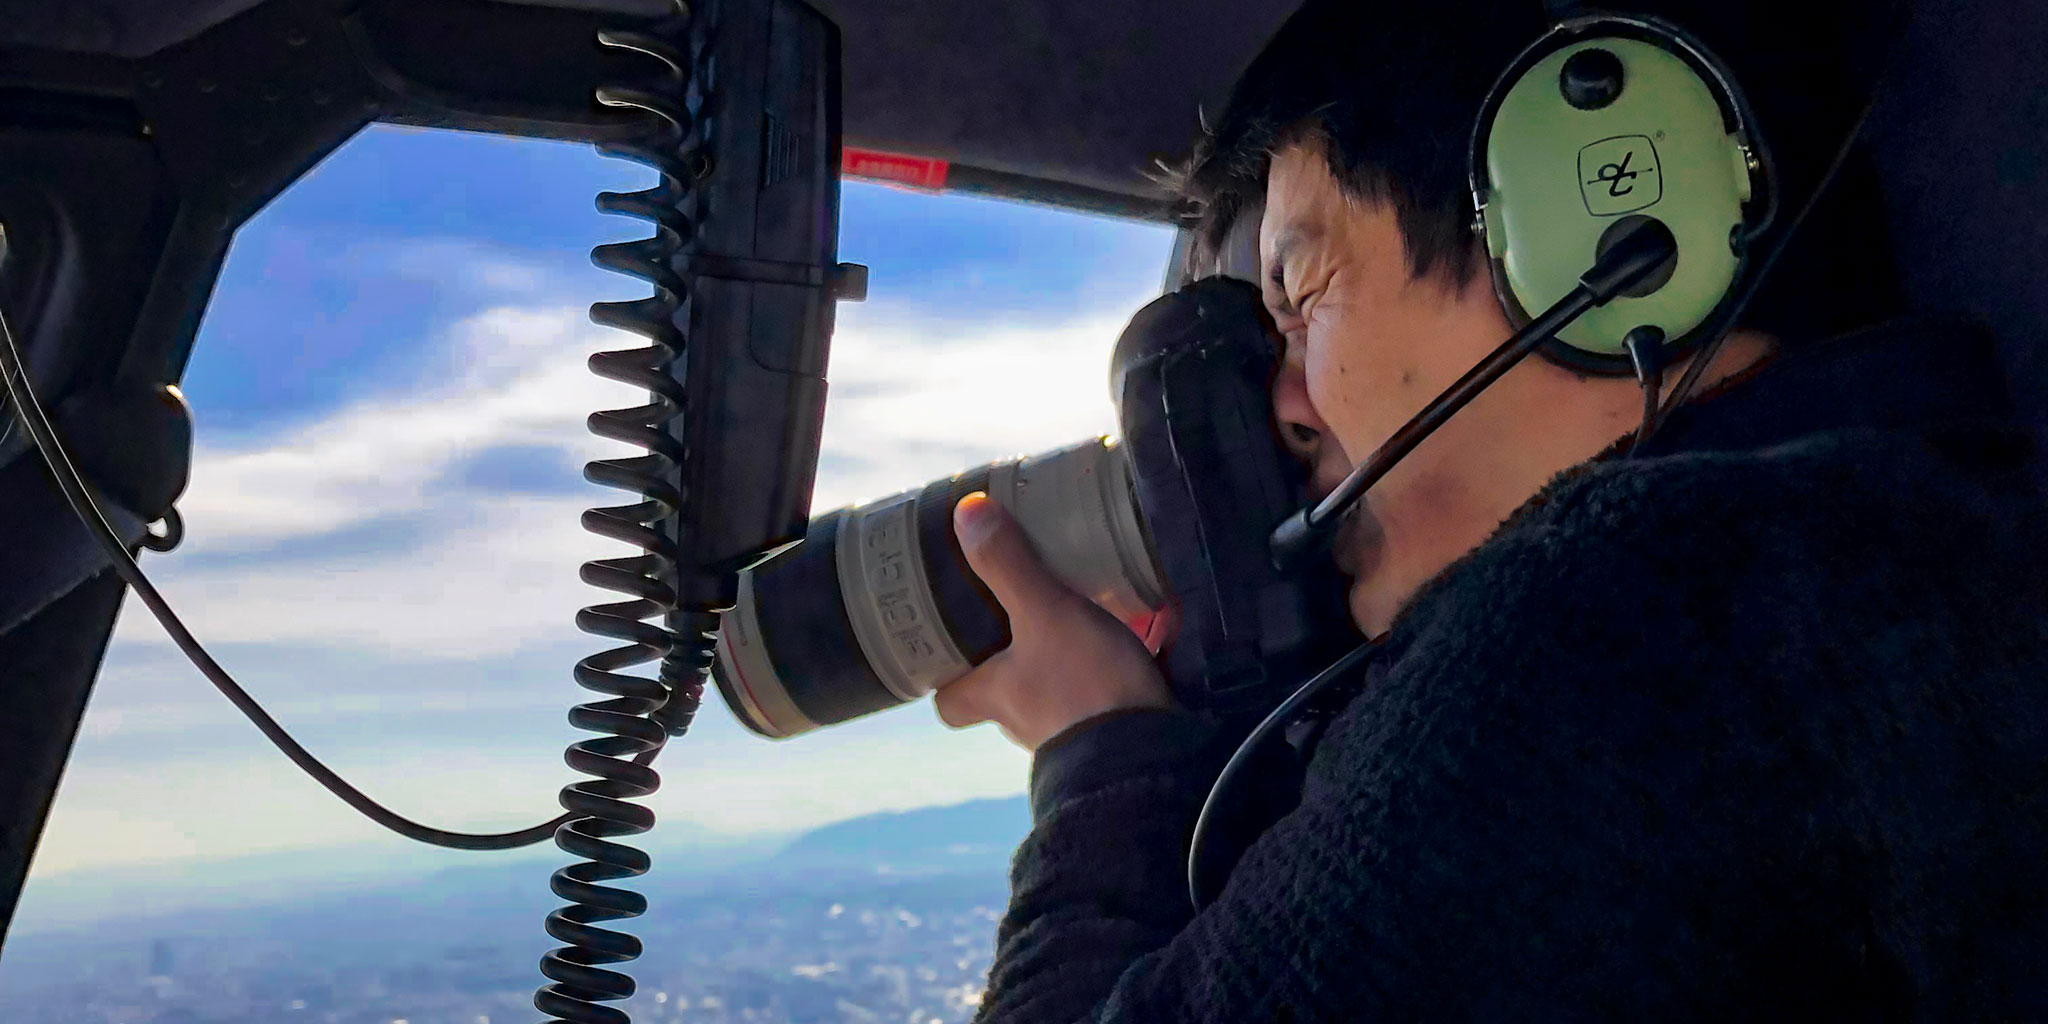 ヘリコプター空撮をするカメラマン